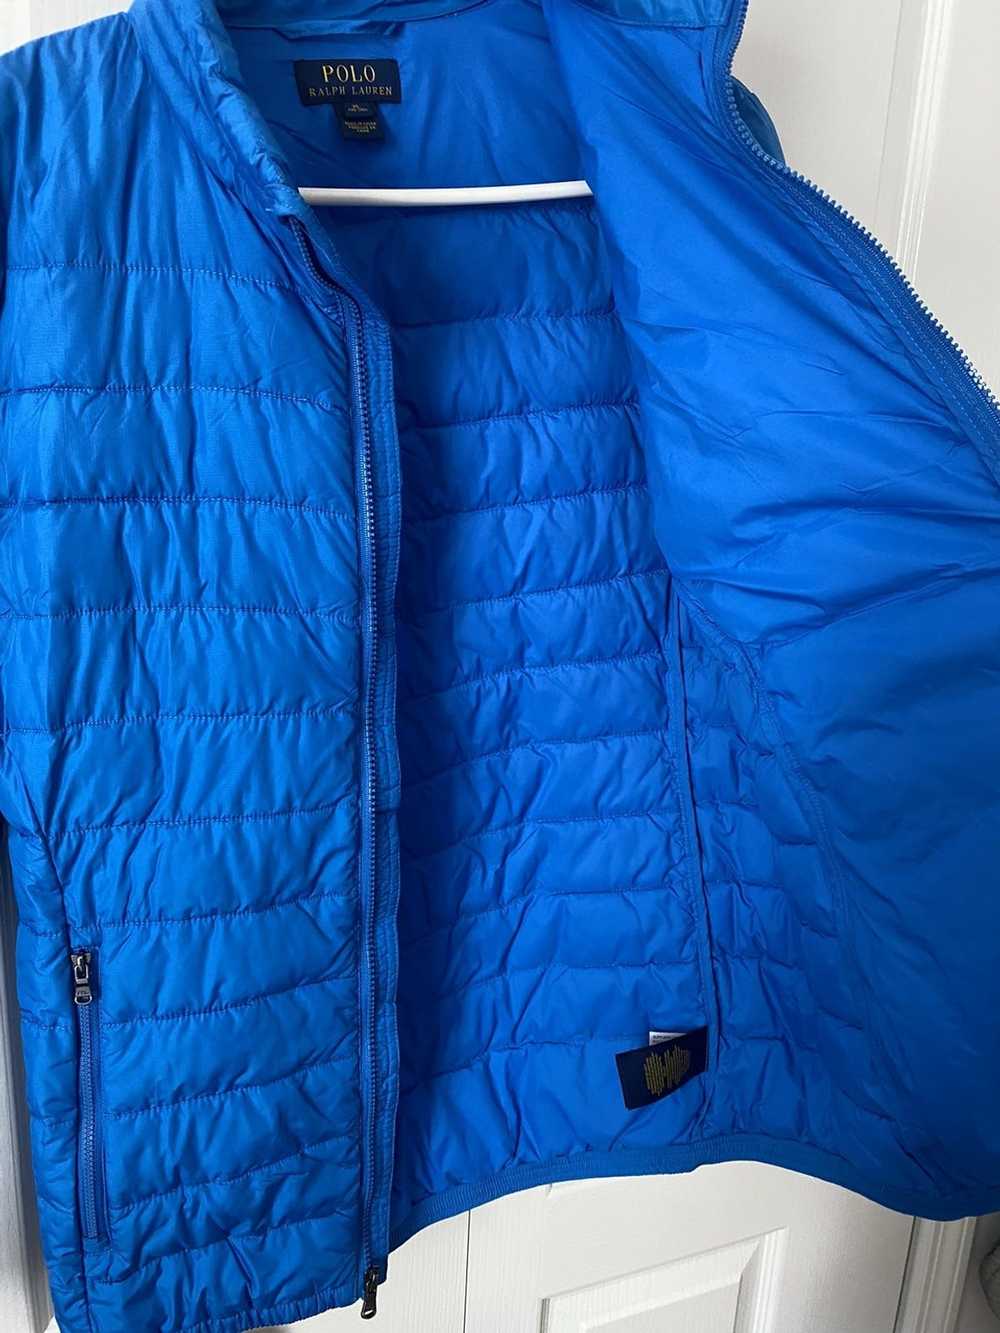 Polo Ralph Lauren Lightweight Puffer jacket - image 4